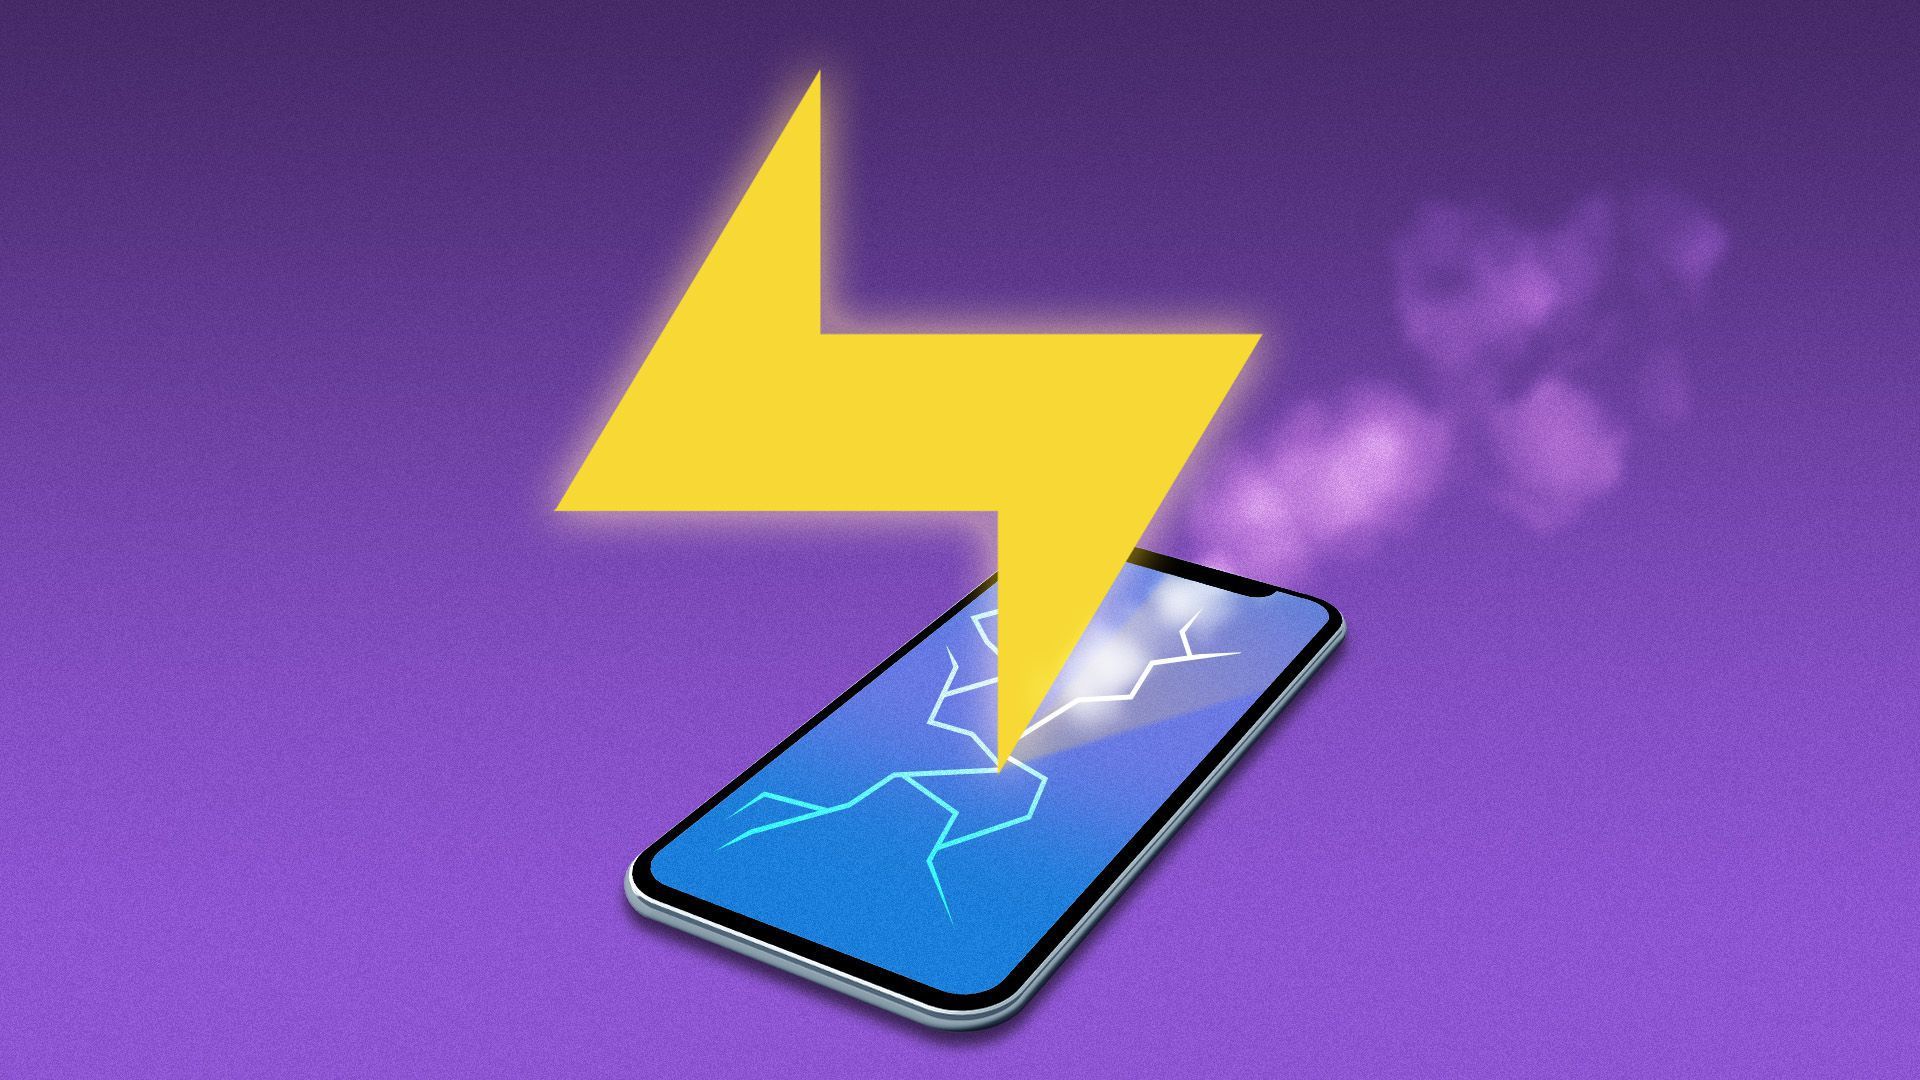 A lightning bolt striking a phone